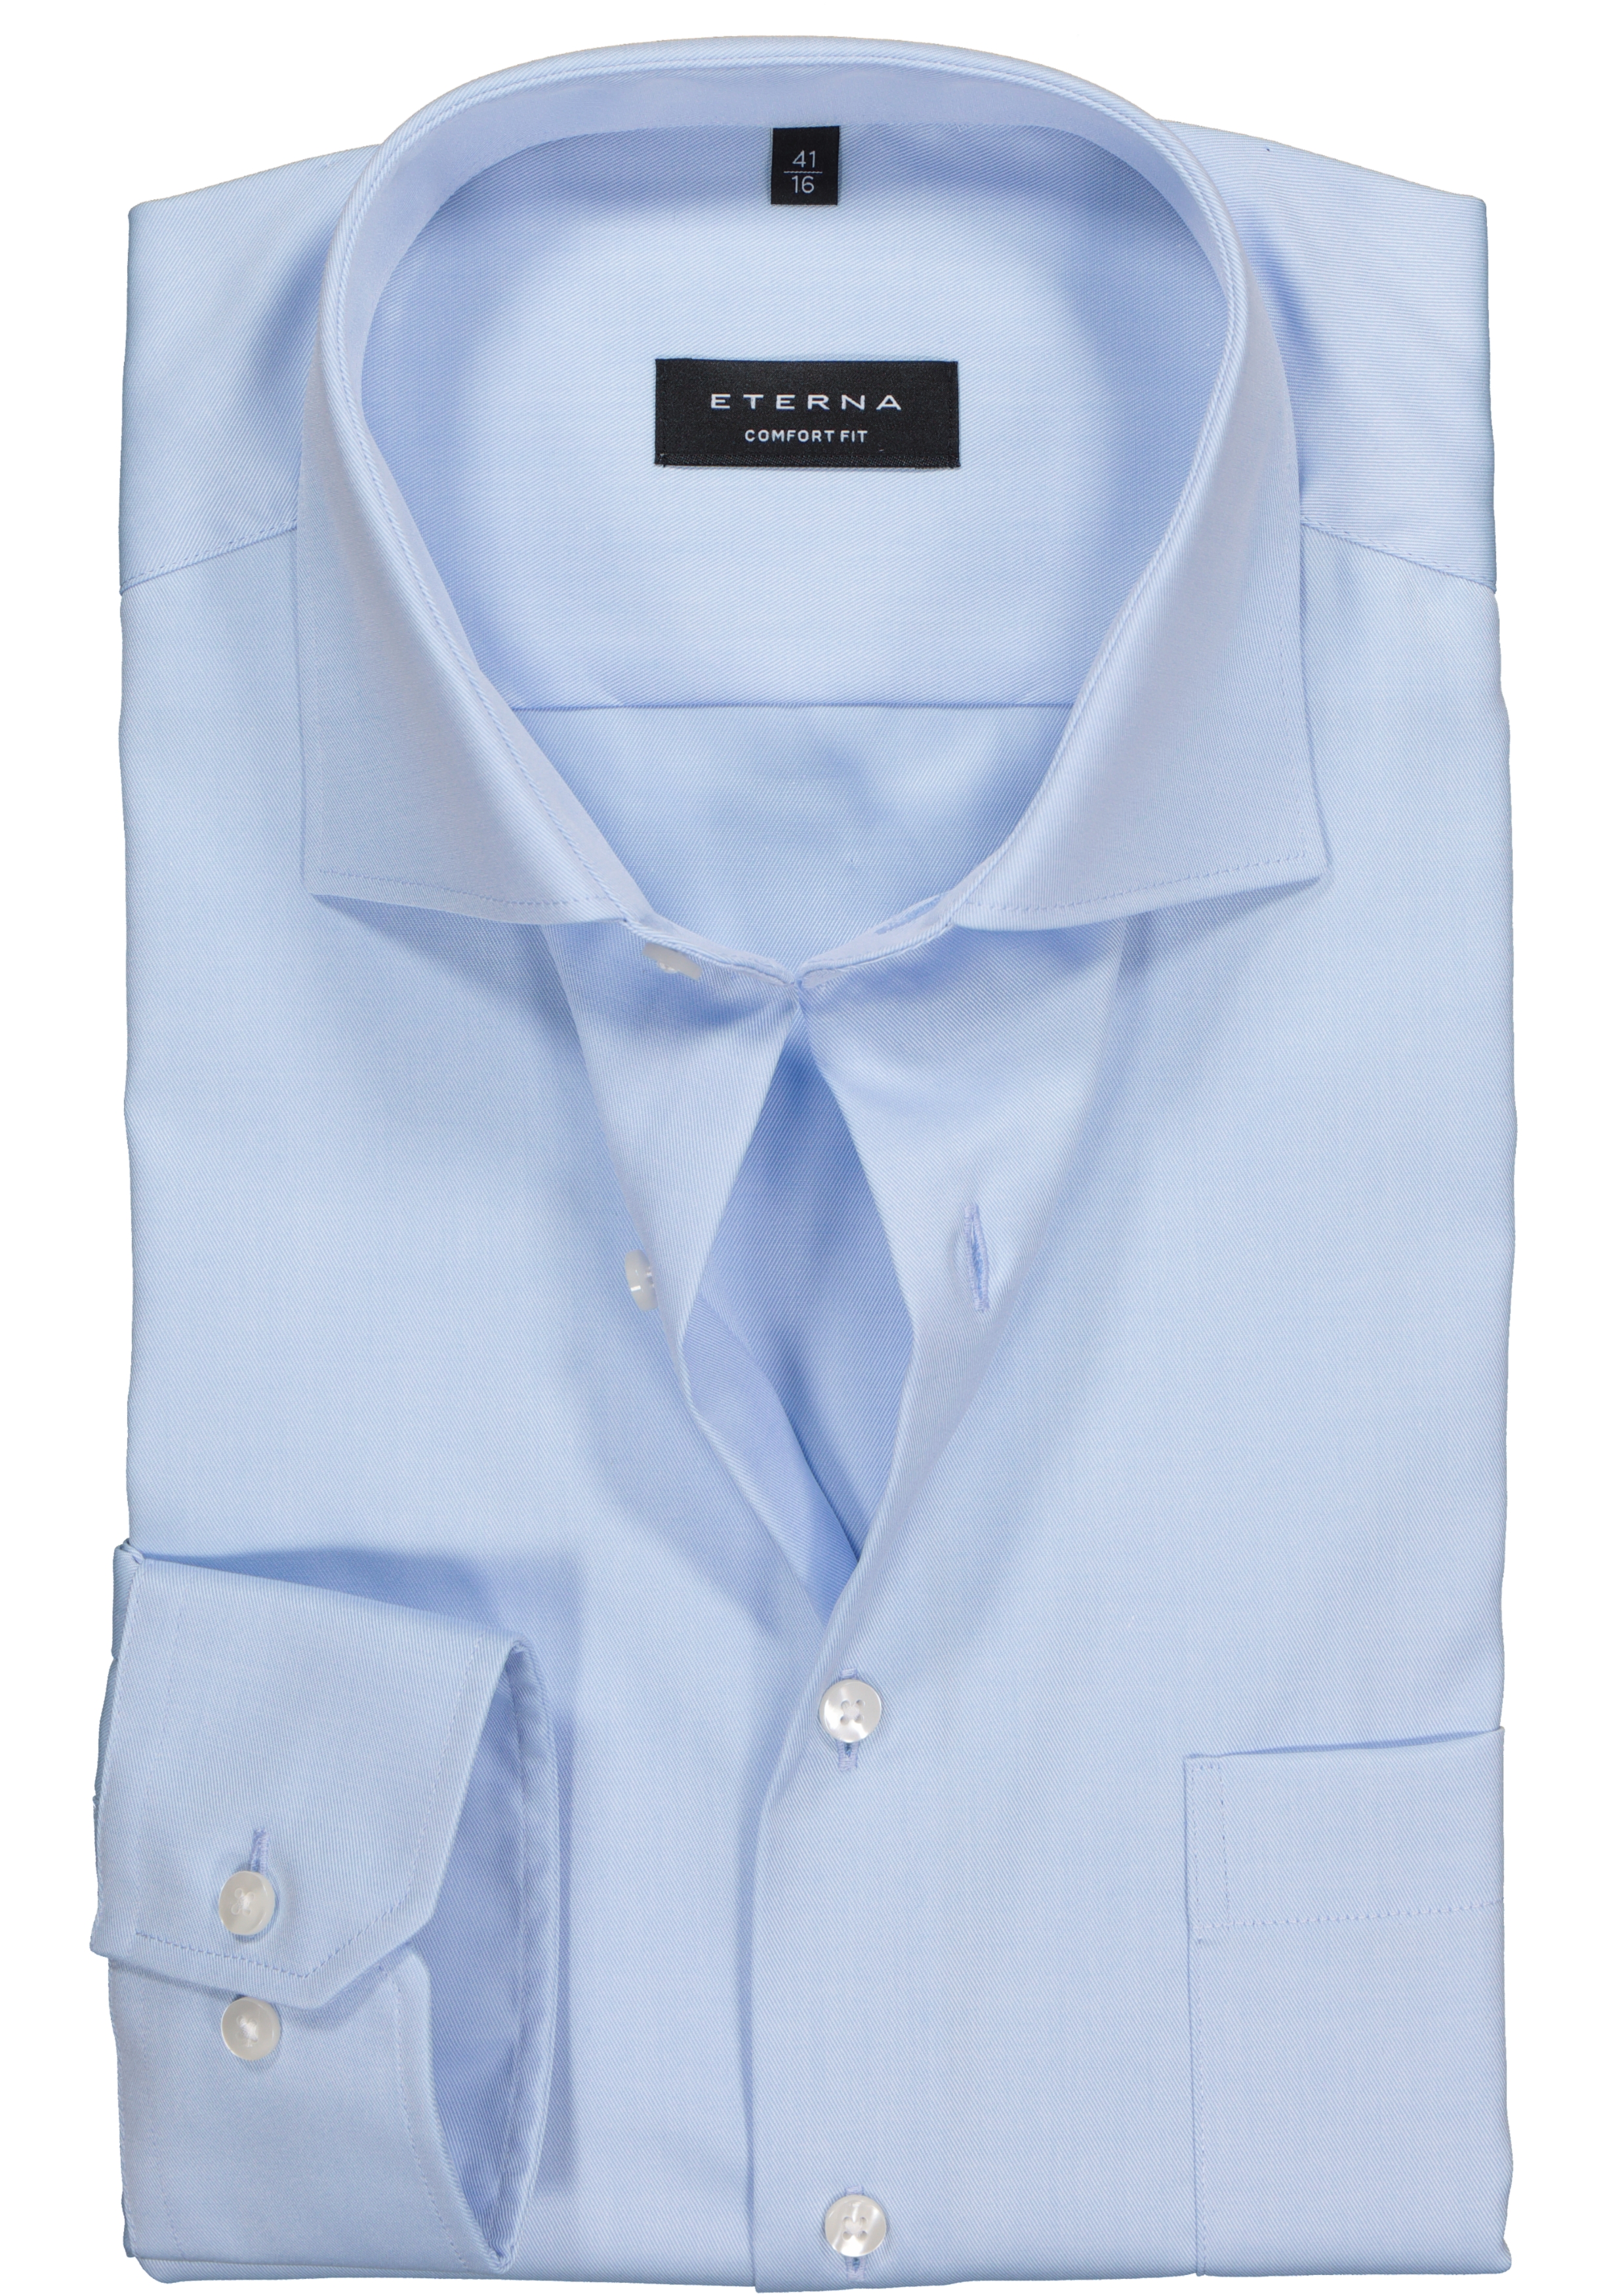 ETERNA comfort fit overhemd, mouwlengte 7, niet doorschijnend twill heren overhemd, lichtblauw